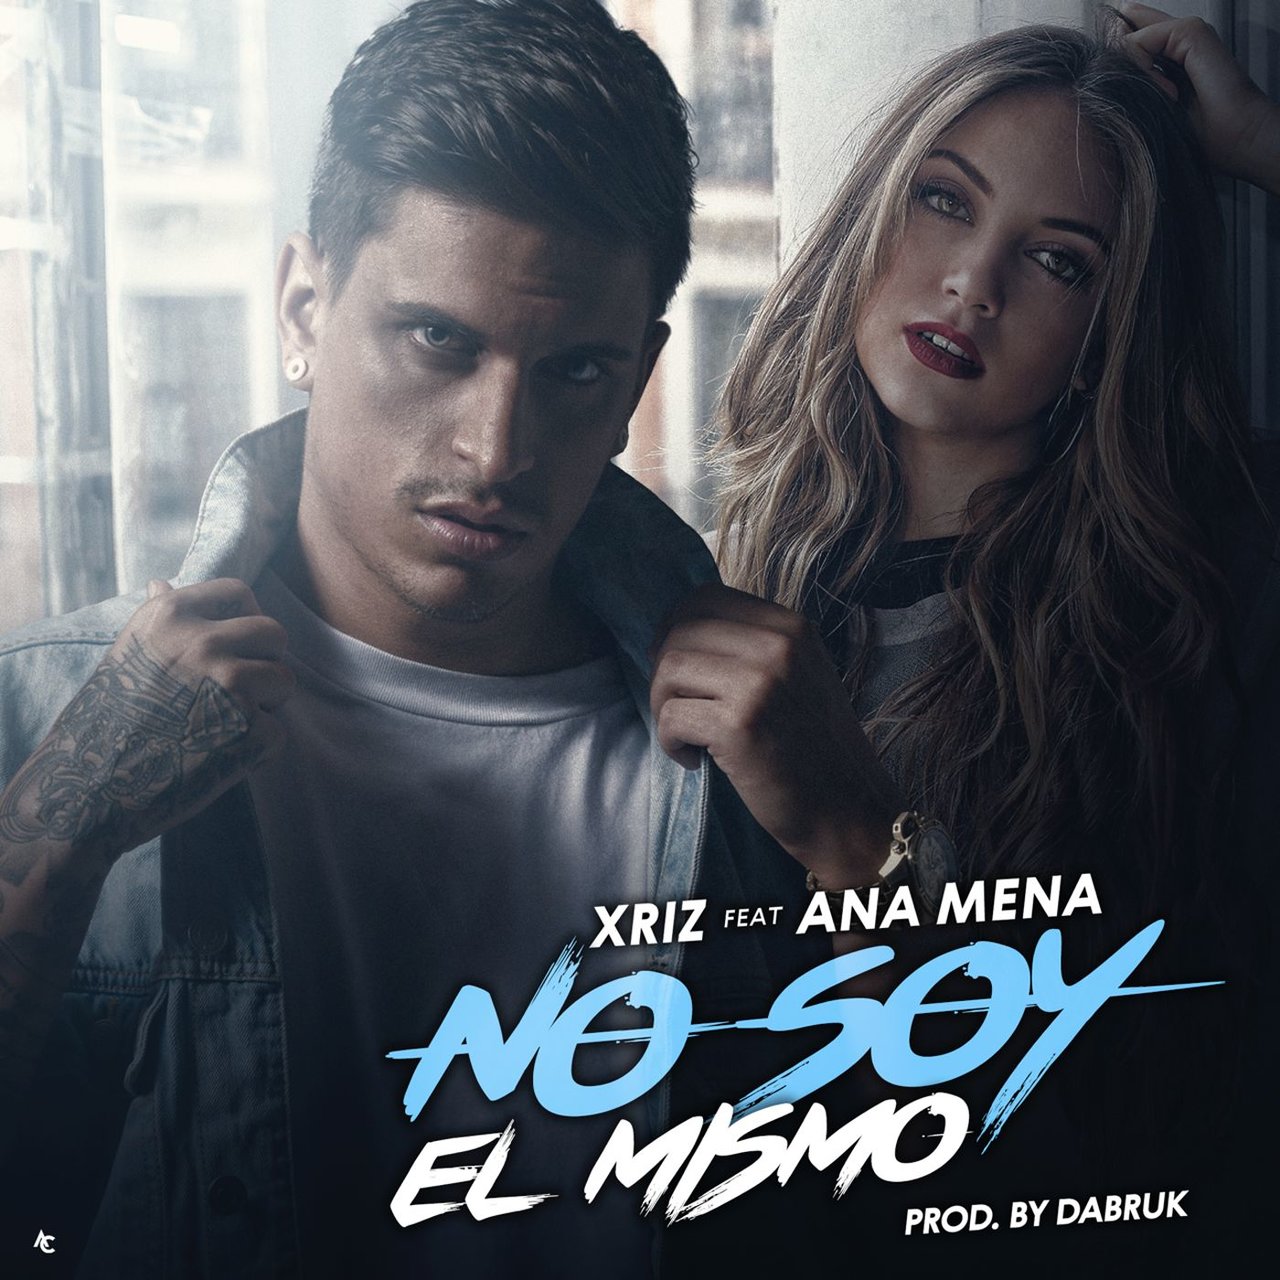 Xriz featuring Ana Mena — No soy el mismo cover artwork